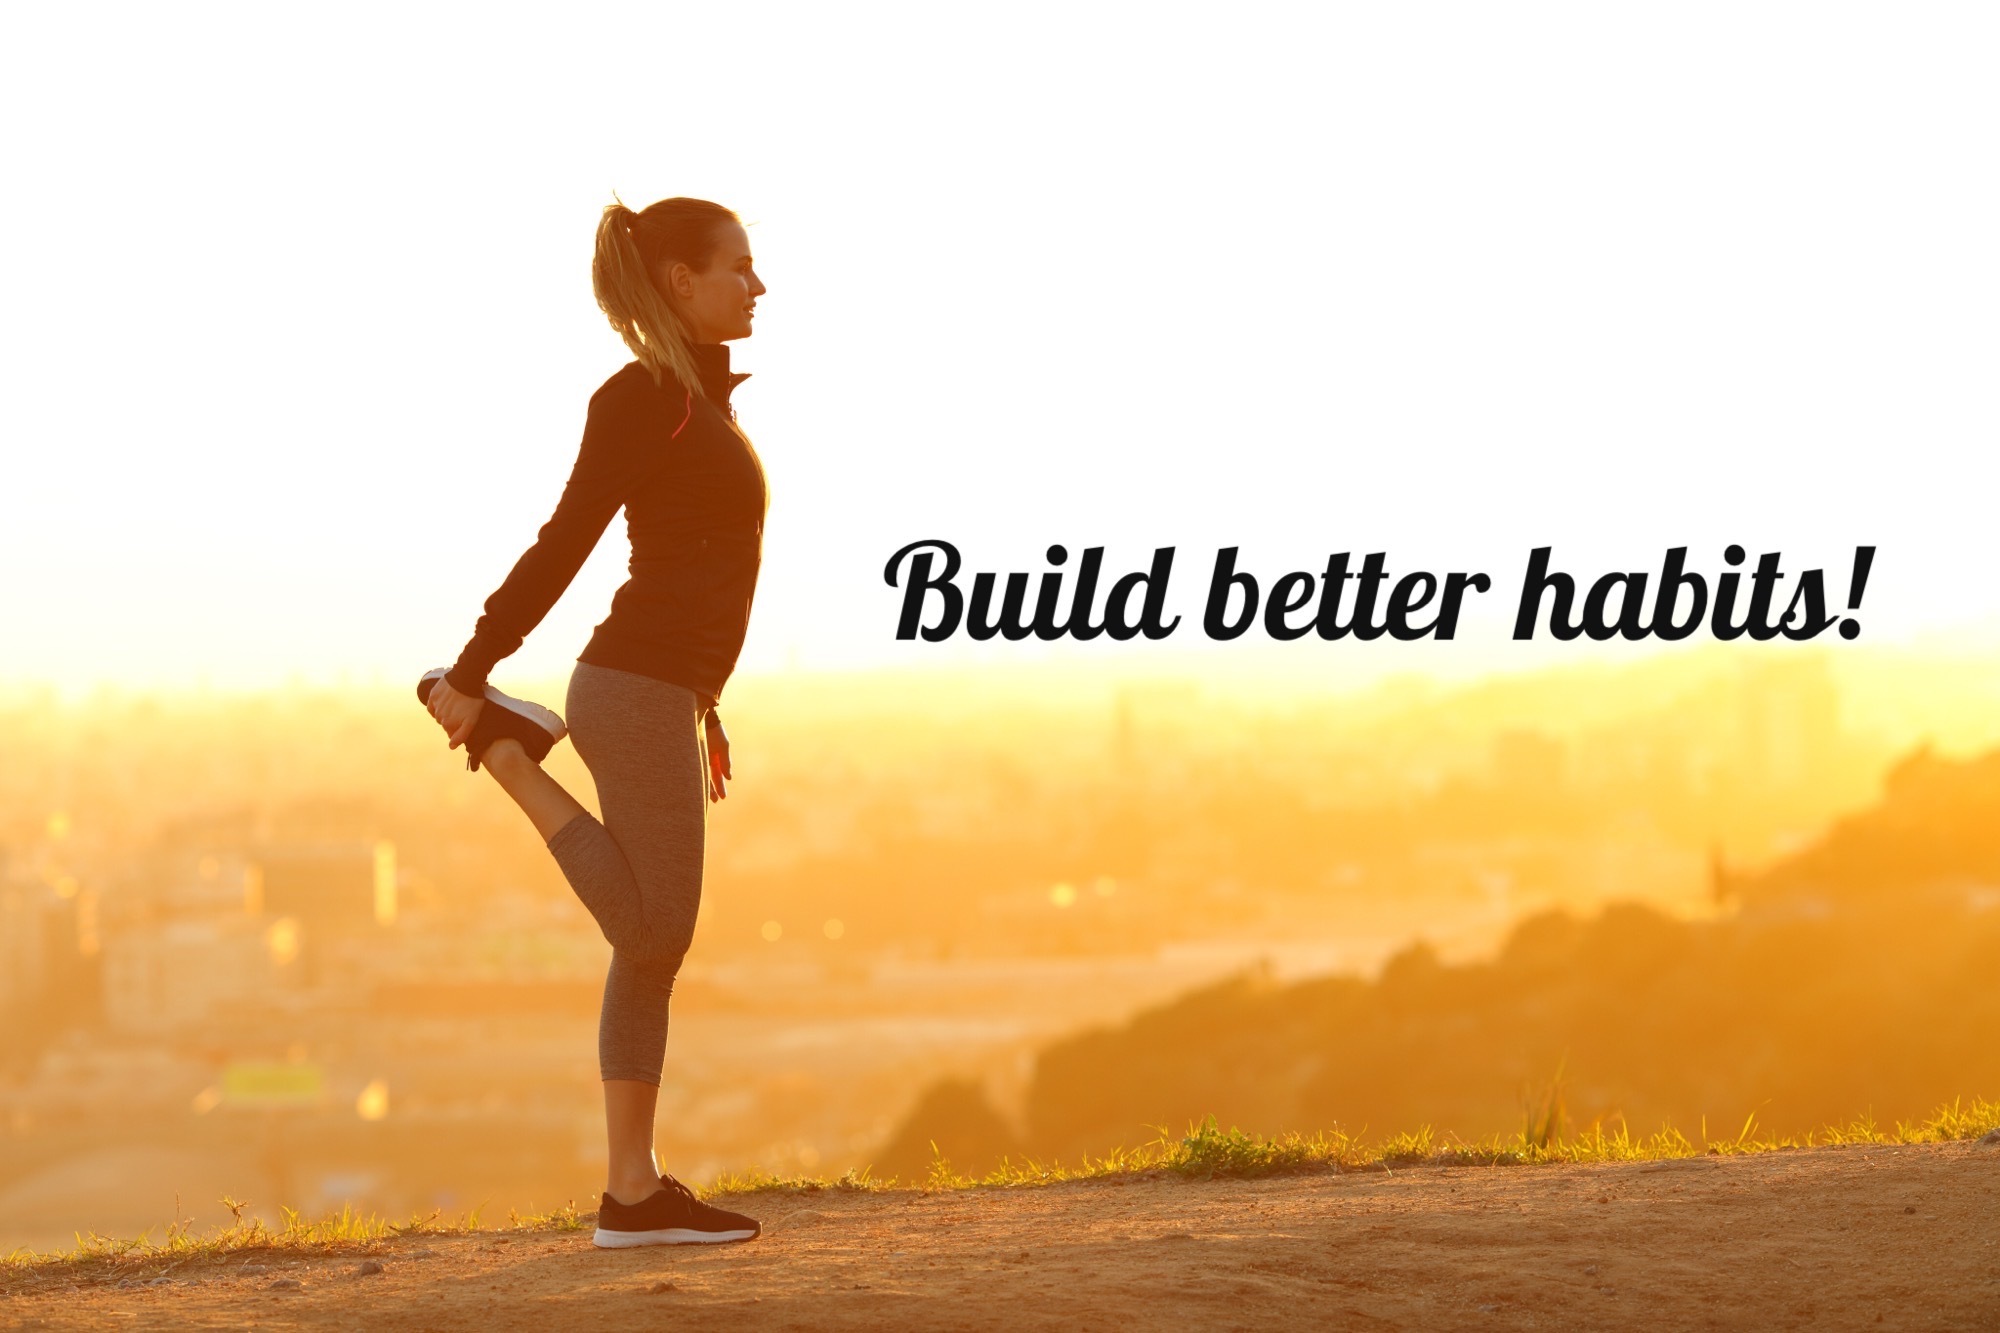 Build better habits